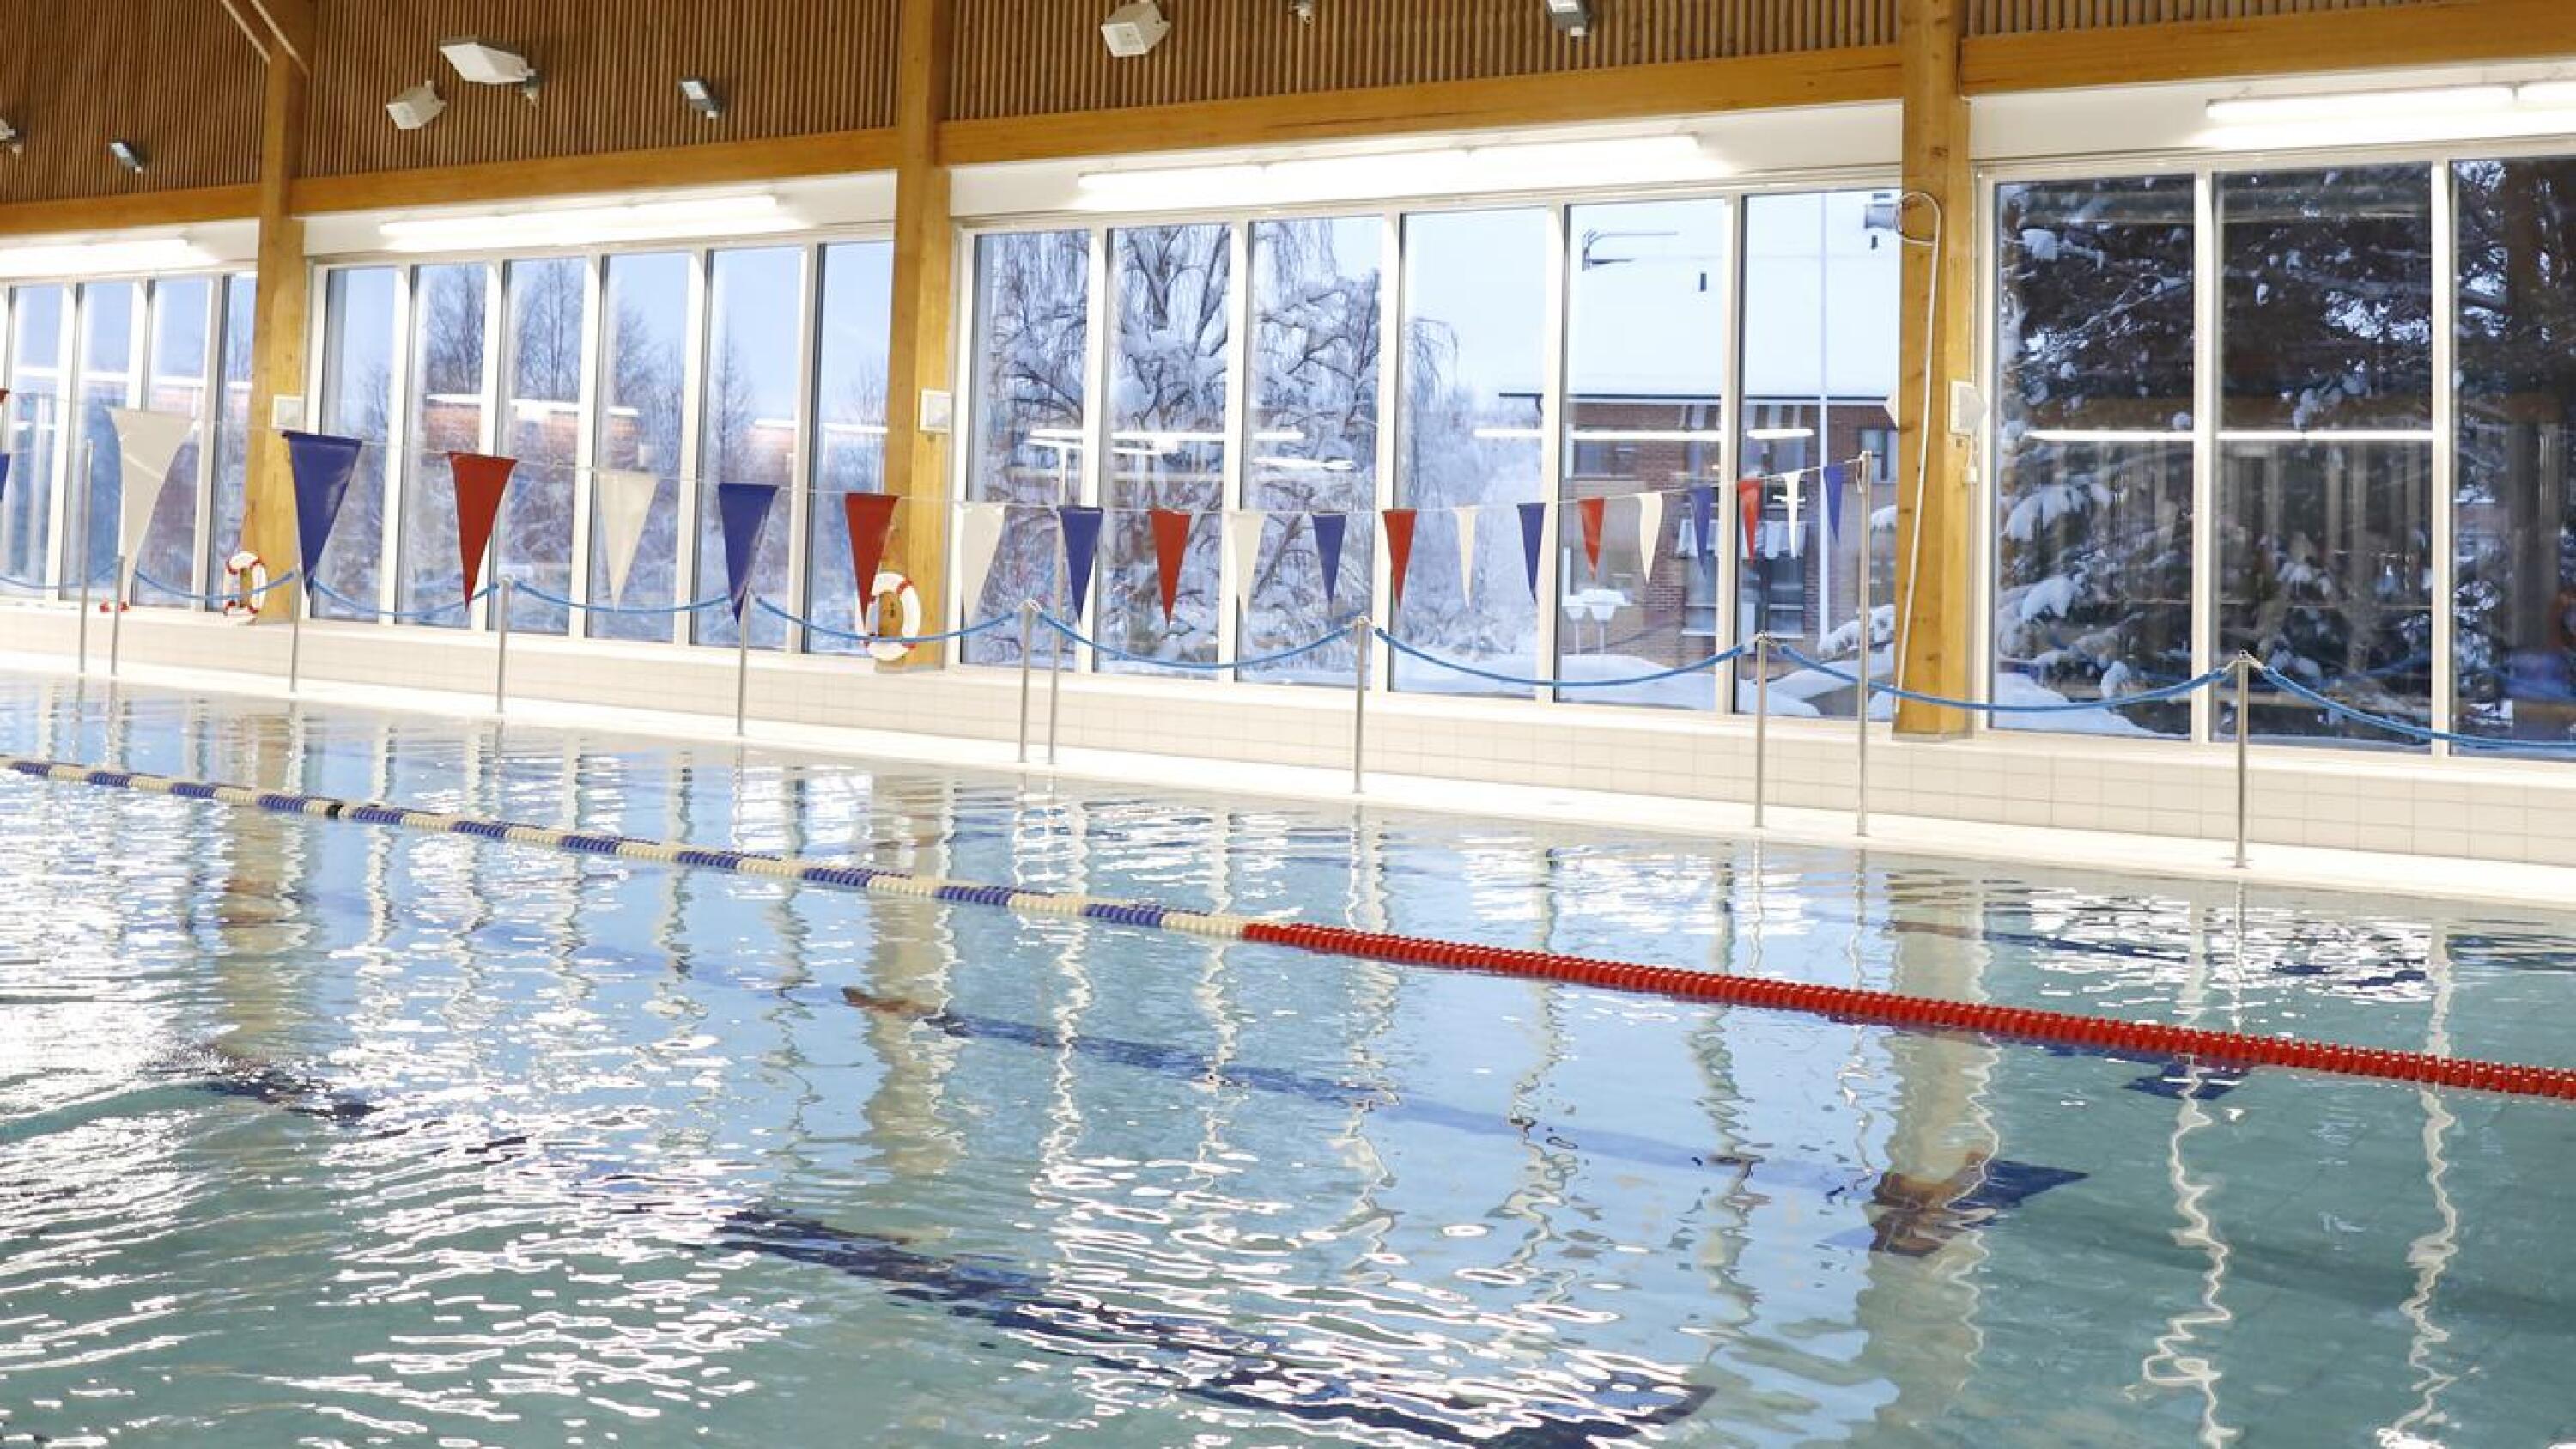 Pohjois-Suomen avi lopetti liikuntapaikkoja koskevan sulun 8. tammikuuta. Kuusamon uimahalli oli asiakkaille auki jo tammikuun ensimmäisellä viikolla Pohjois-Suomen hallinto-oikeuden välipäätöksen perusteella.